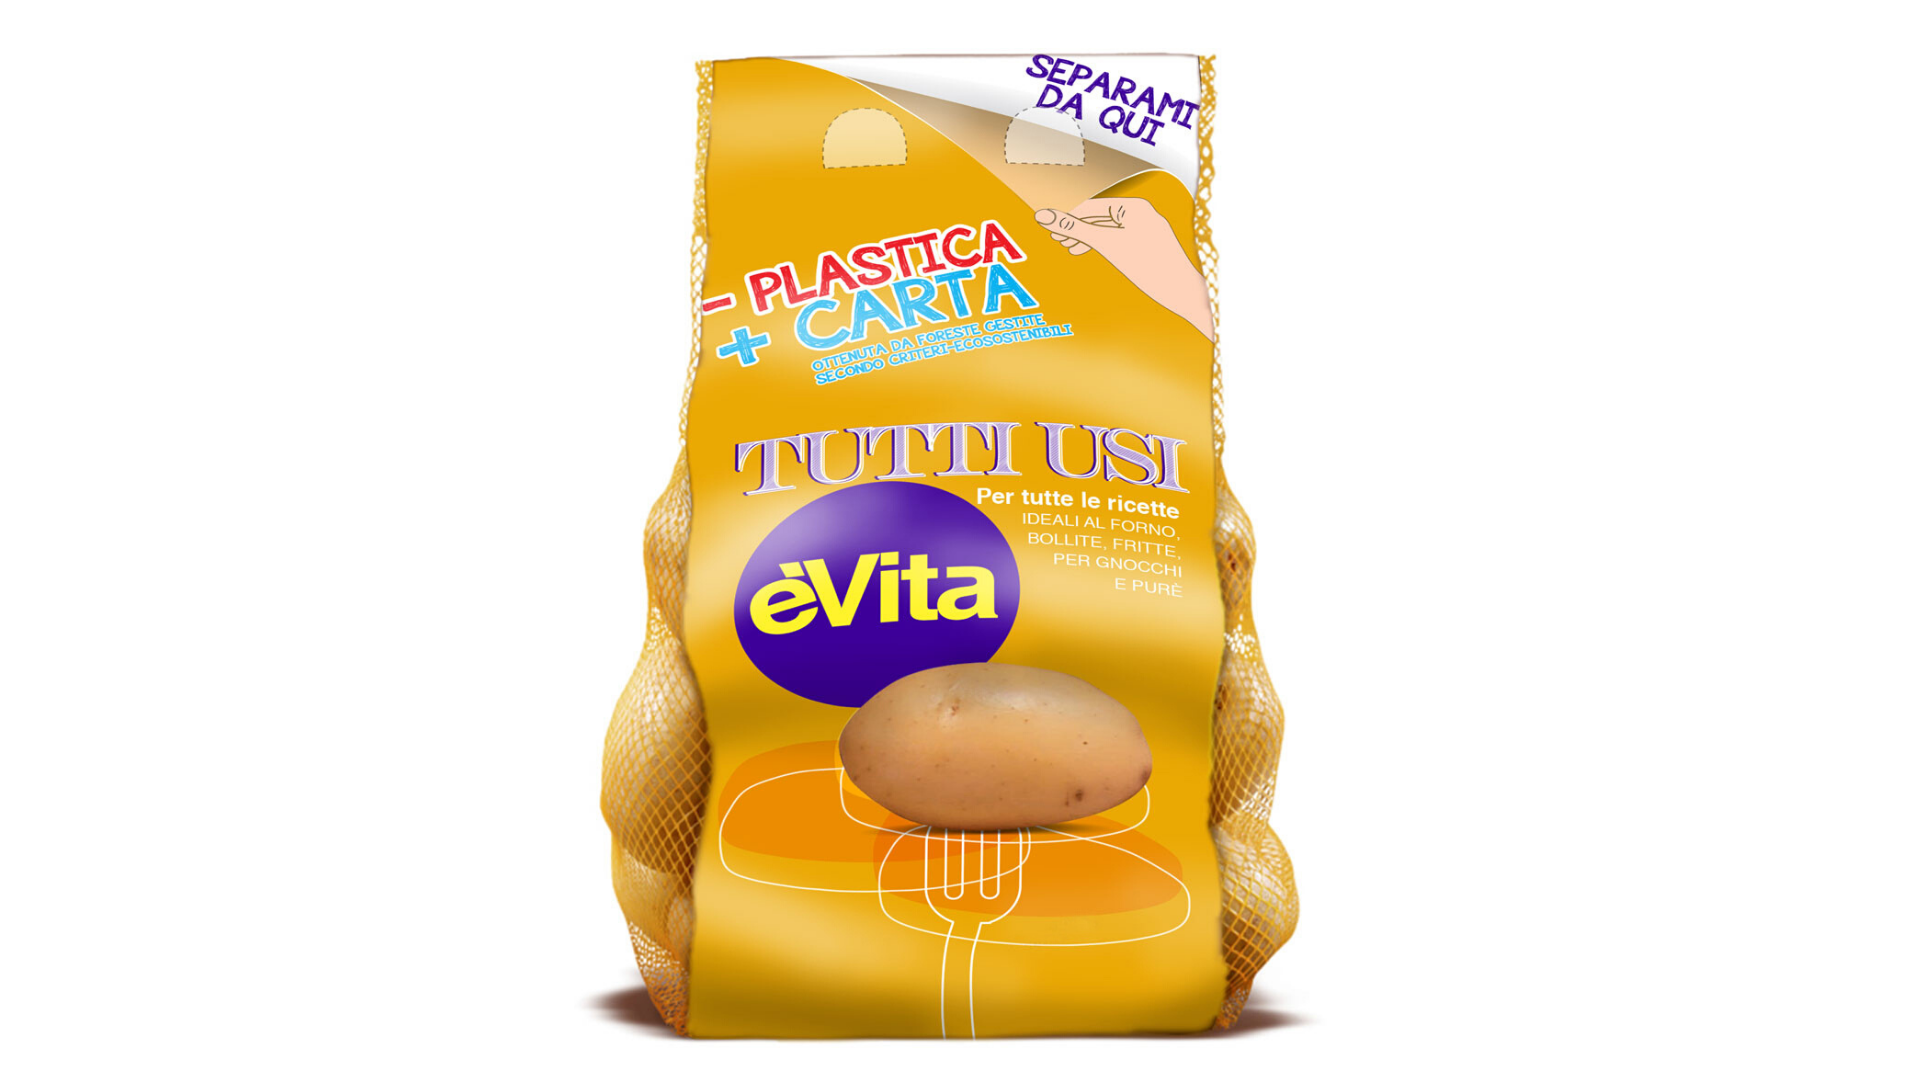 Romagnoli F.lli sceglie il nuovo packaging amico dell’ambiente per le patate èVita Tutti gli usi